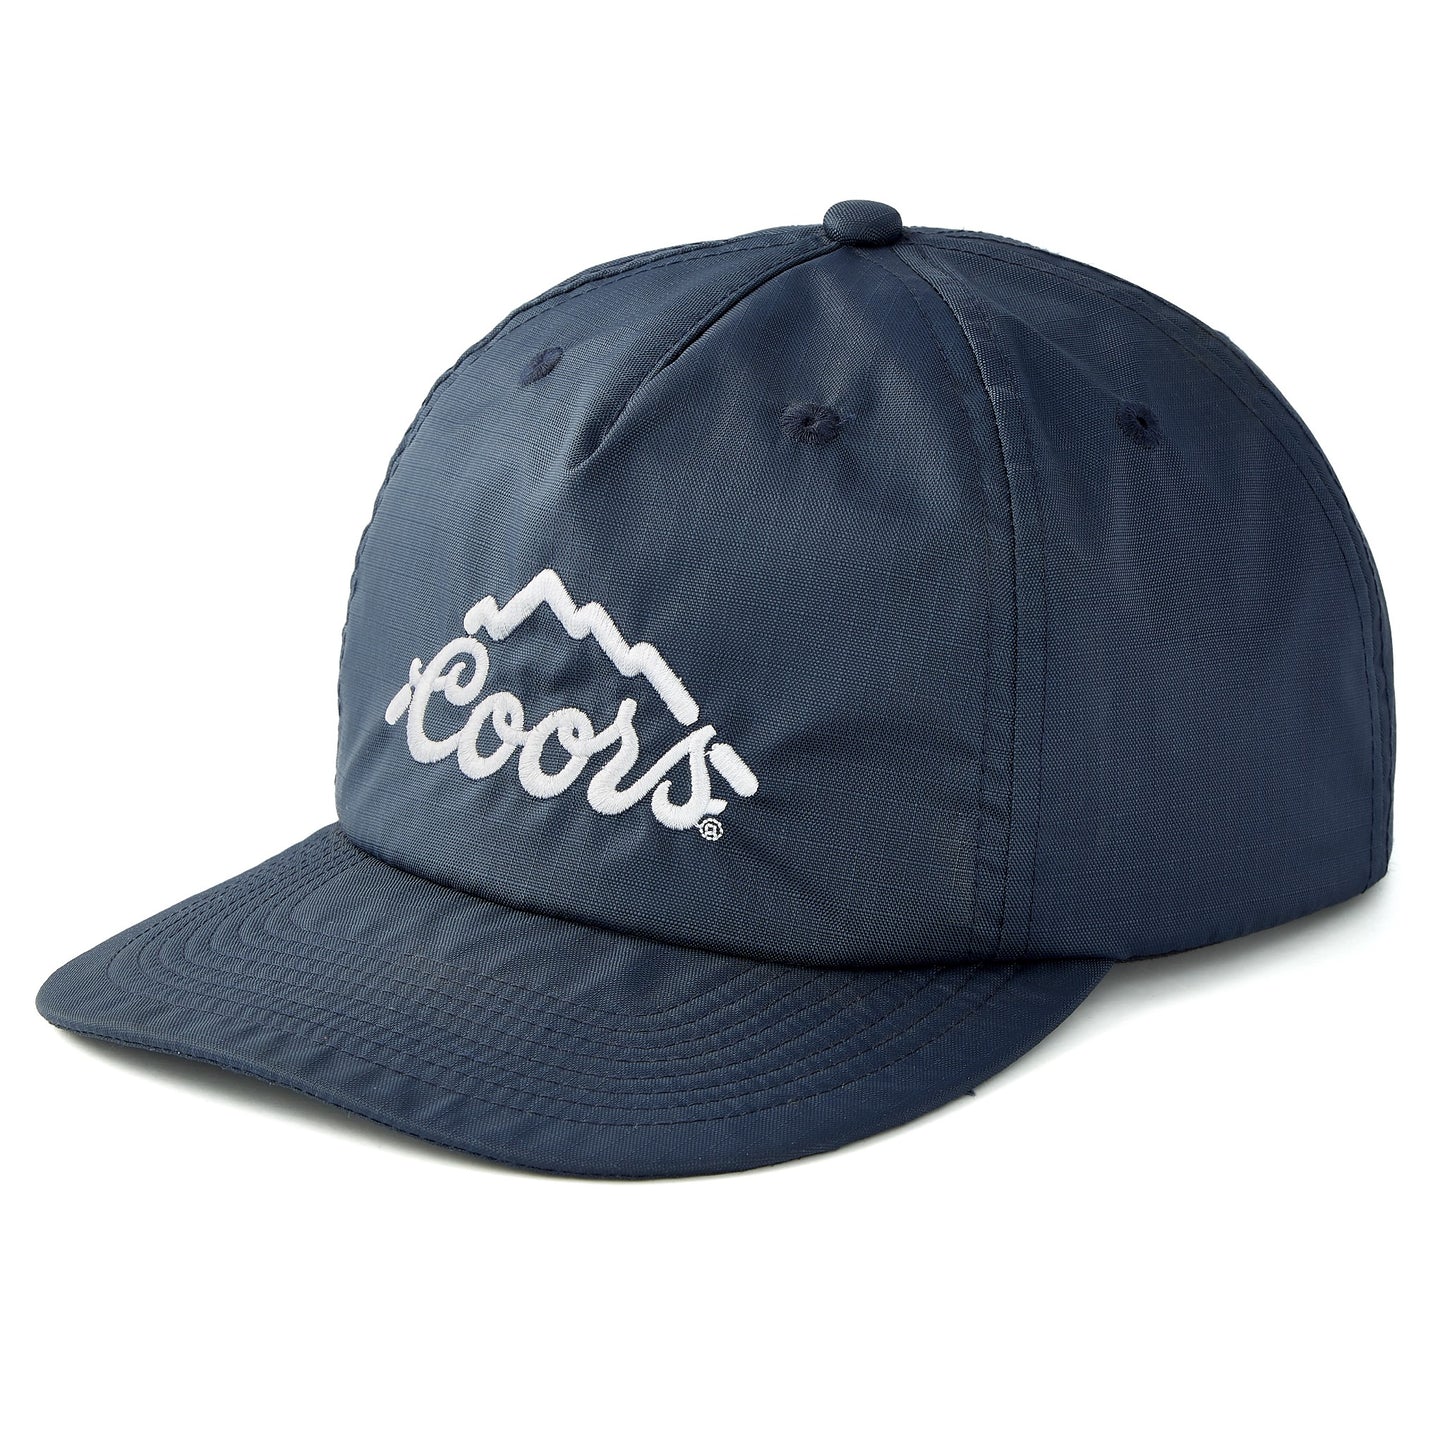 Coors x Huckberry Ripstop Cap